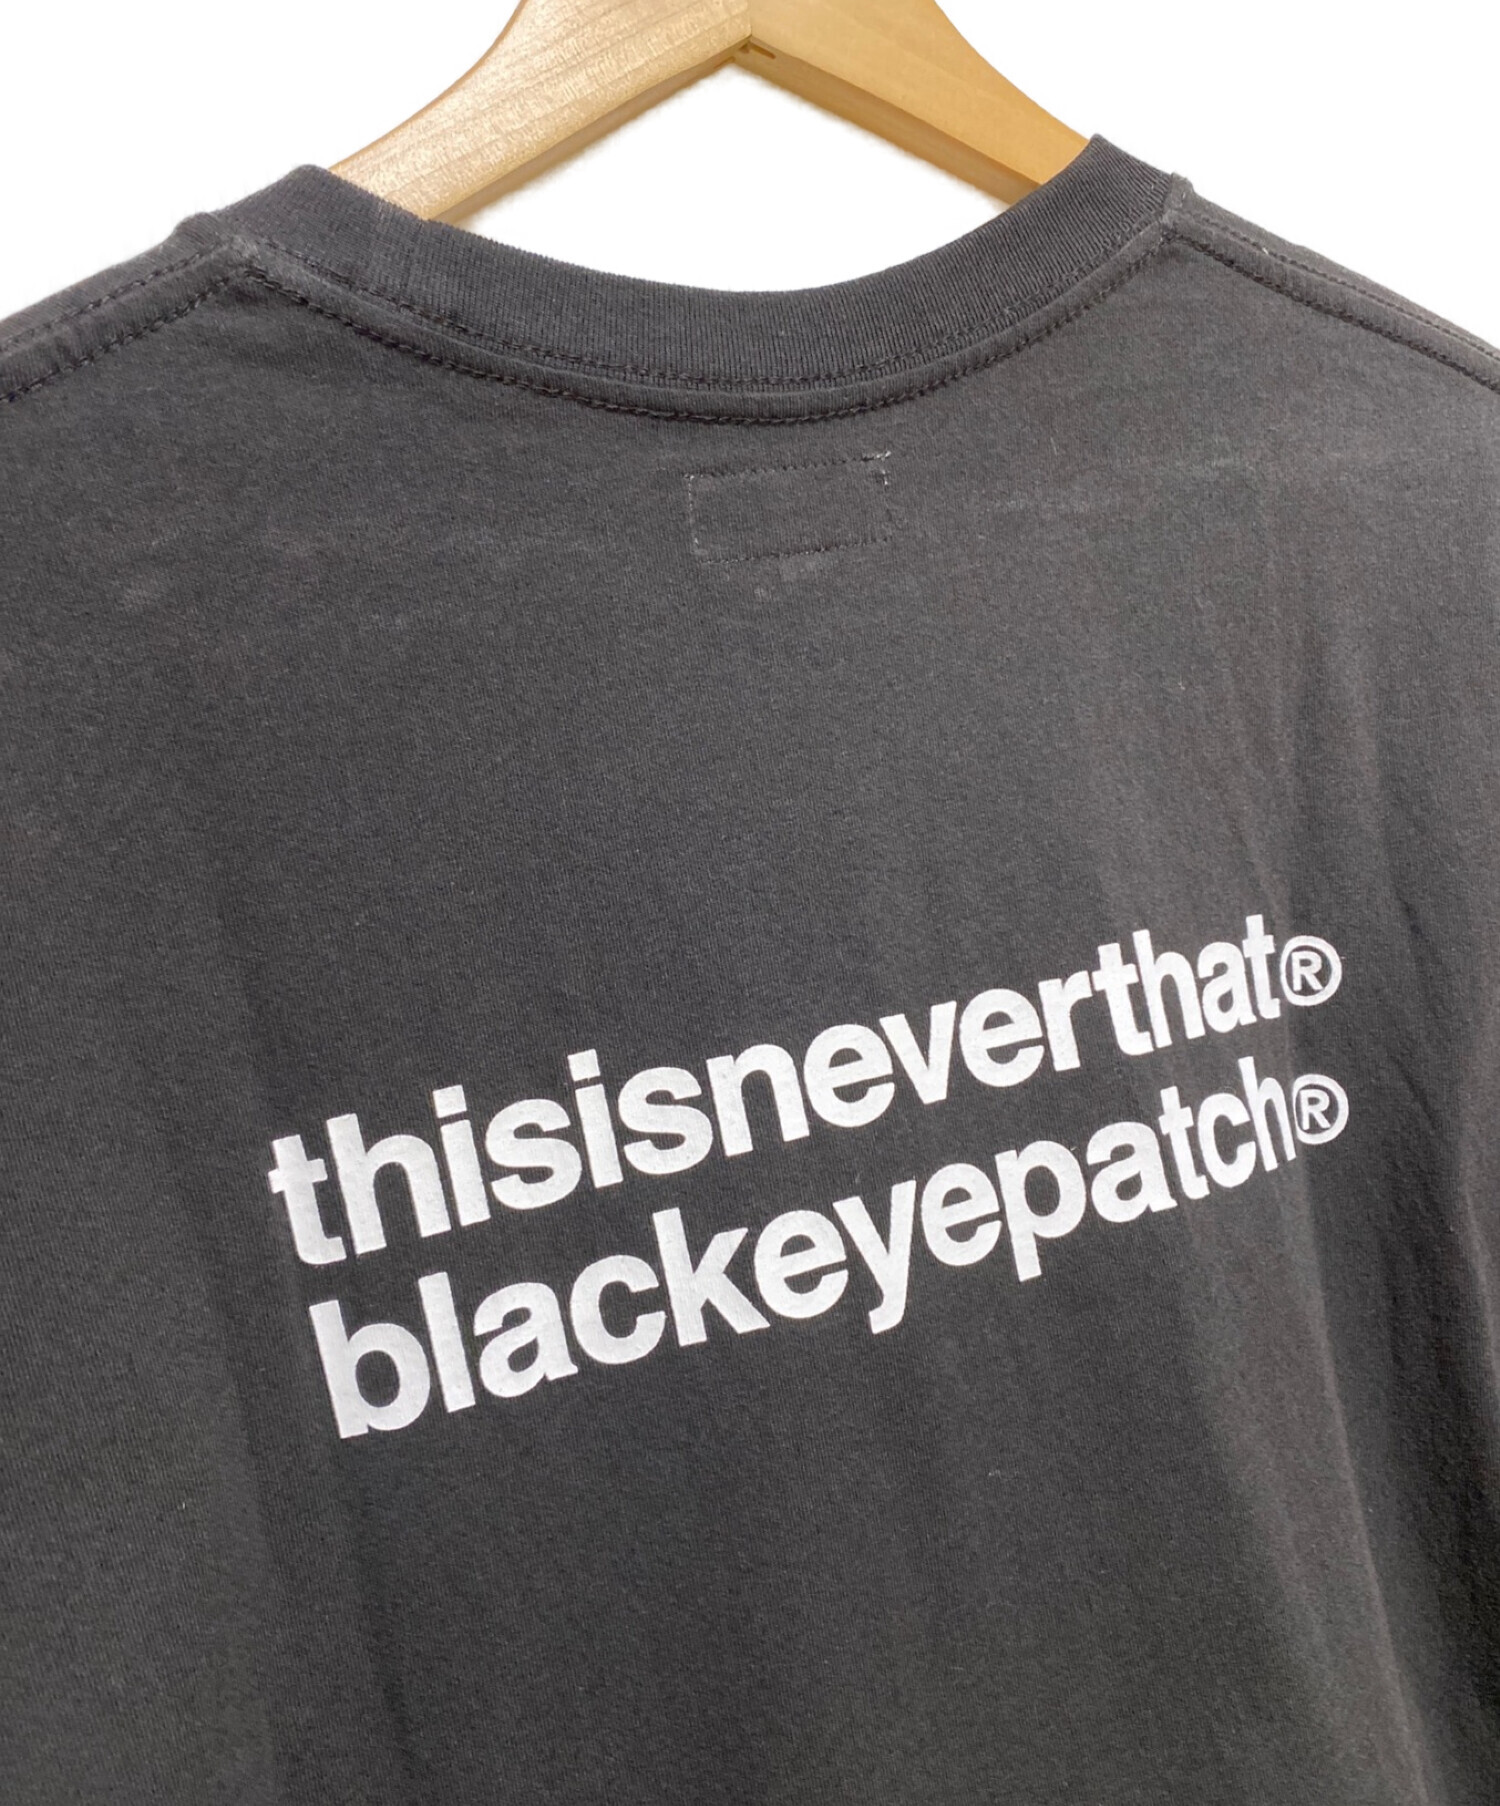 thisisneverthat×blackeyepatchコラボTシャツ